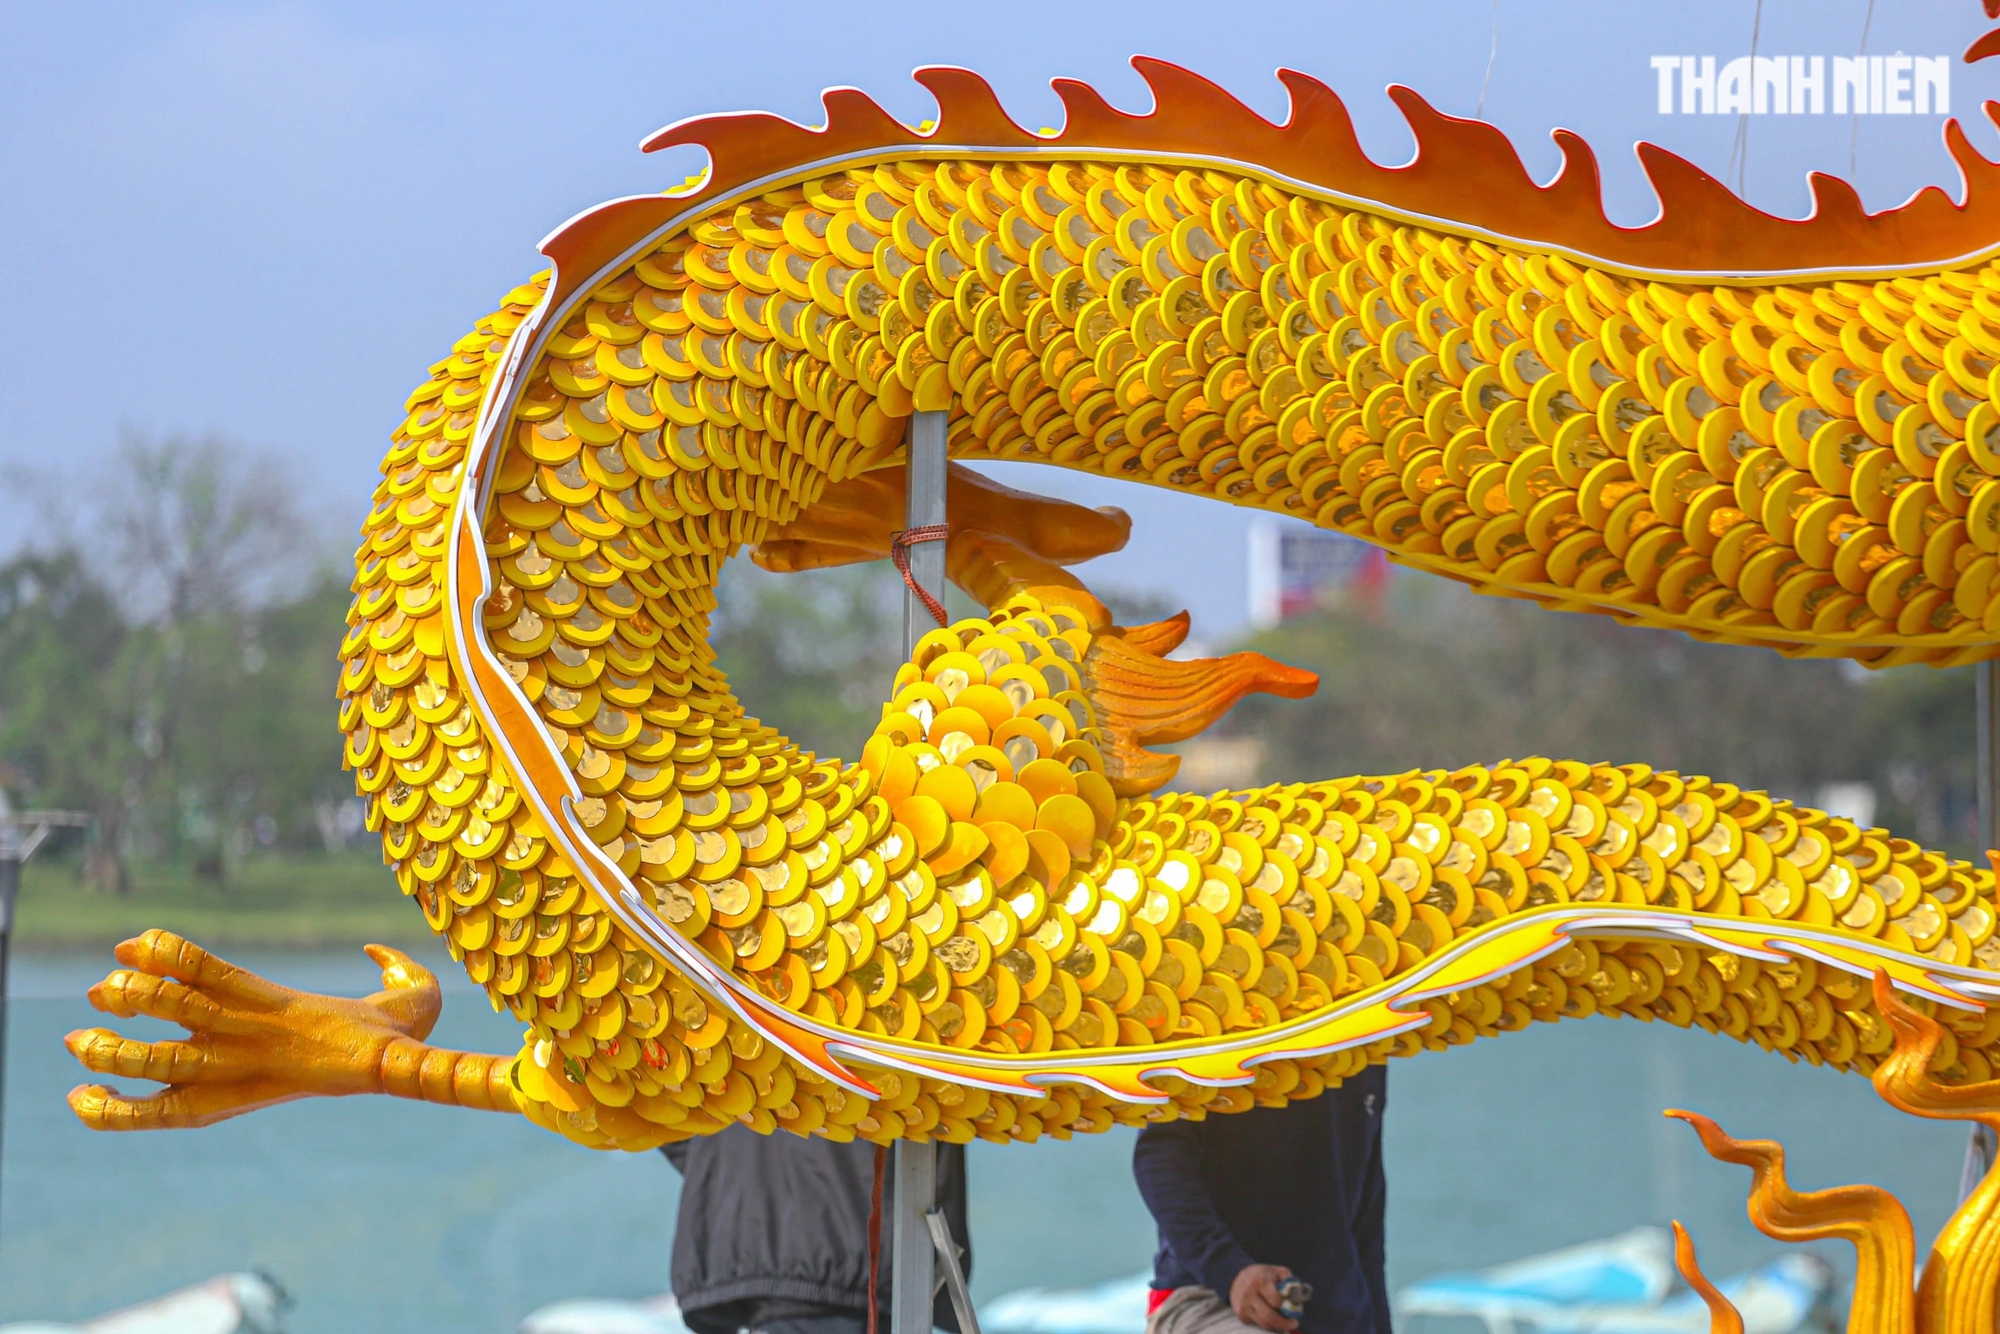 Linh vật rồng xứ Huế khổng lồ uốn lượn: Được tạo hình từ kiến trúc và bảo vật triều Nguyễn- Ảnh 8.